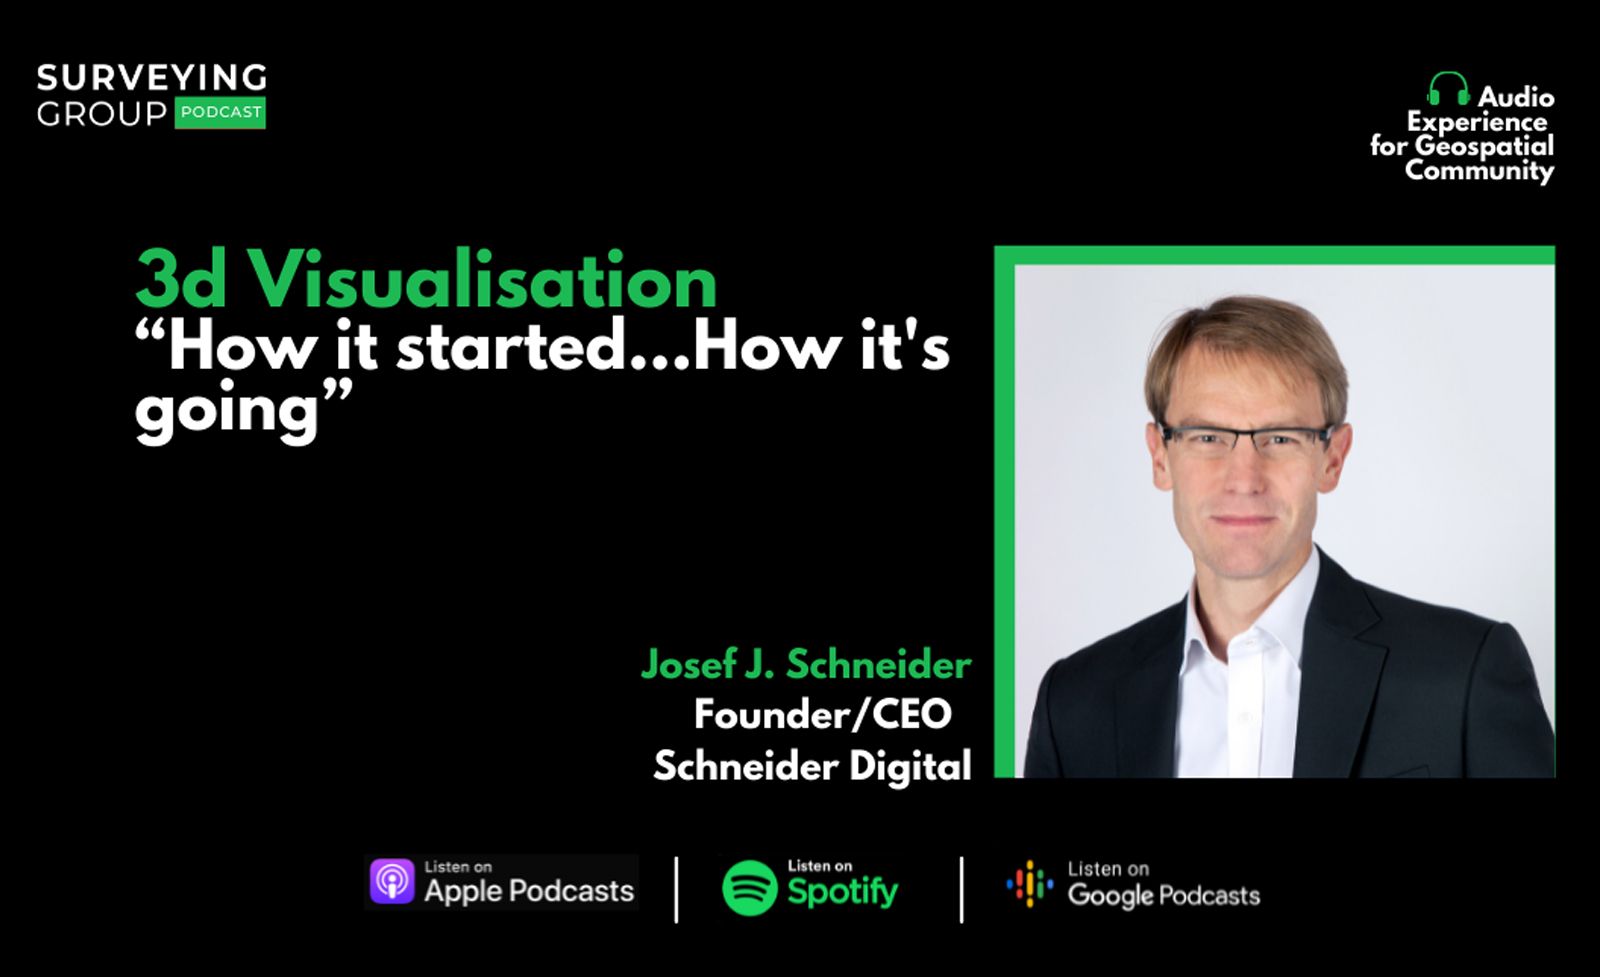 Podcast mit Josef Schneider auf der Geospatial Community Plattform der SURVEYING GROUP